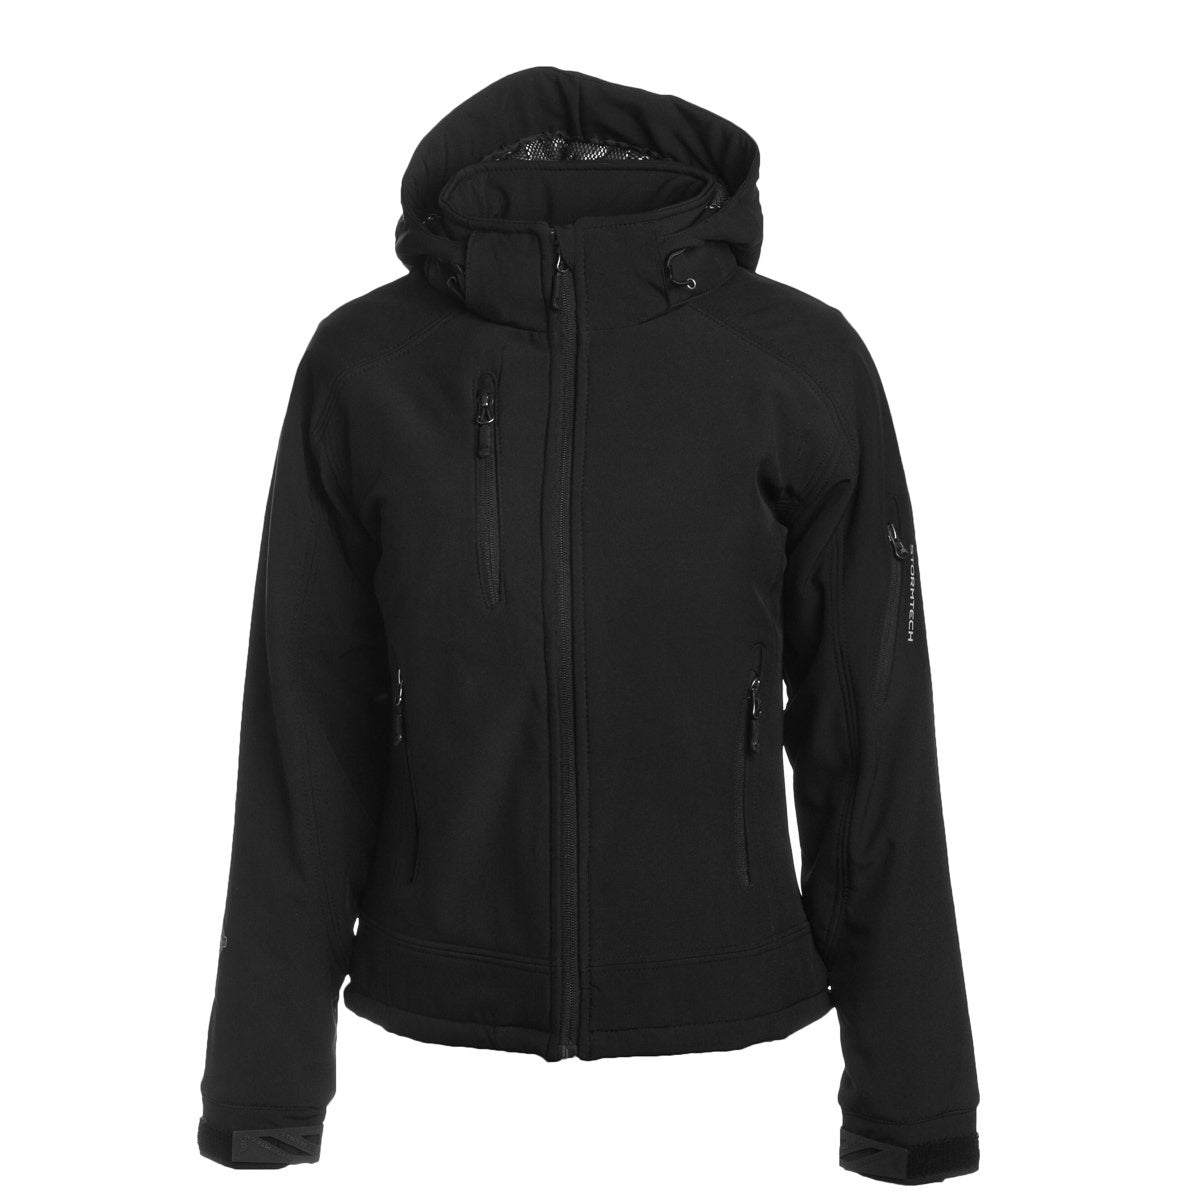 Stormtech Ladies Waterproof Softshell Thermal Hooded Jacket